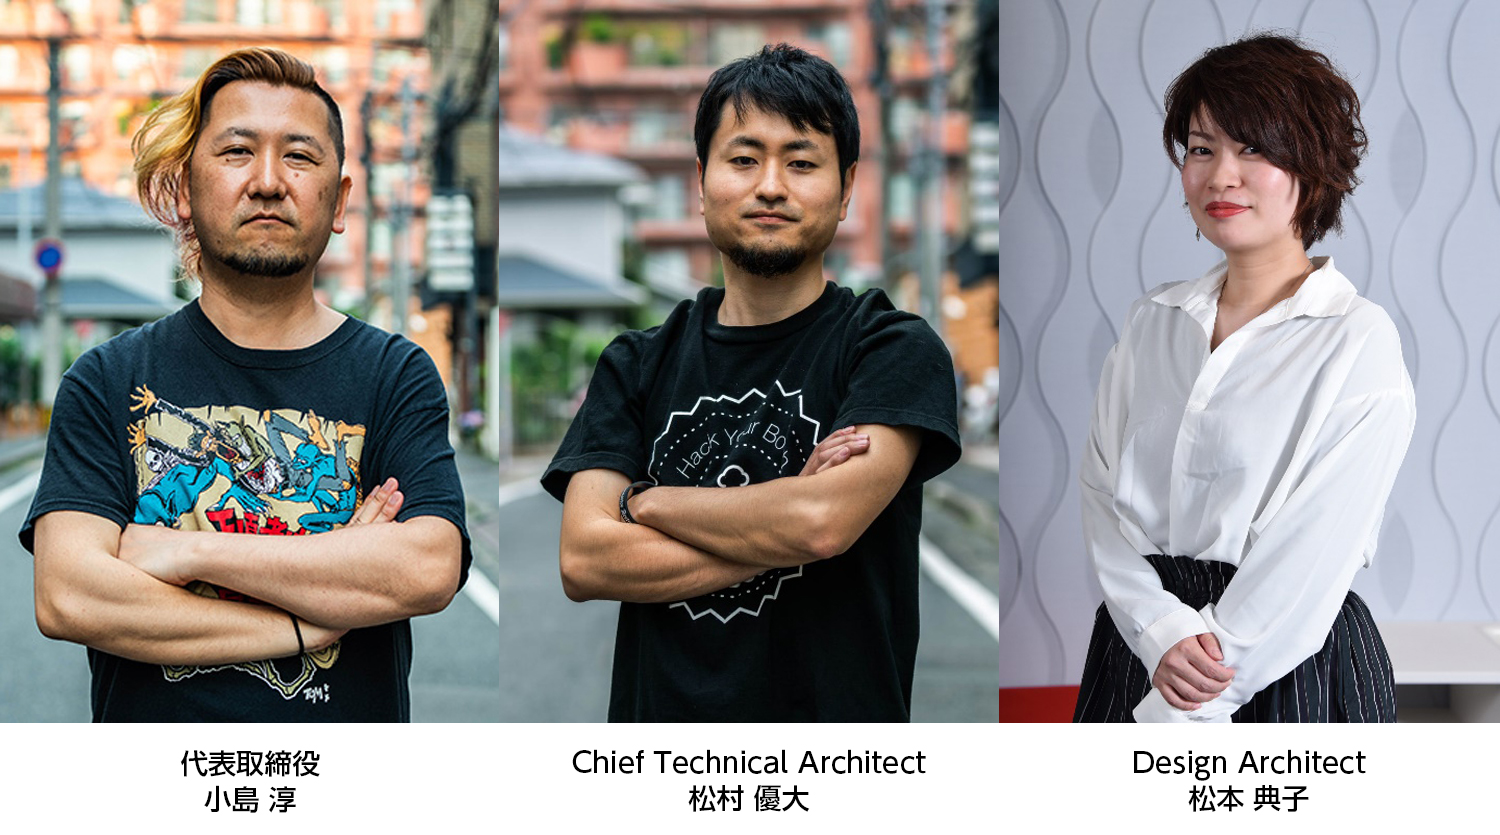 オルターブース、代表取締役の小島淳がMicrosoft Regional Directorを、松村優大と松本典子はMicrosoft MVPを再受賞